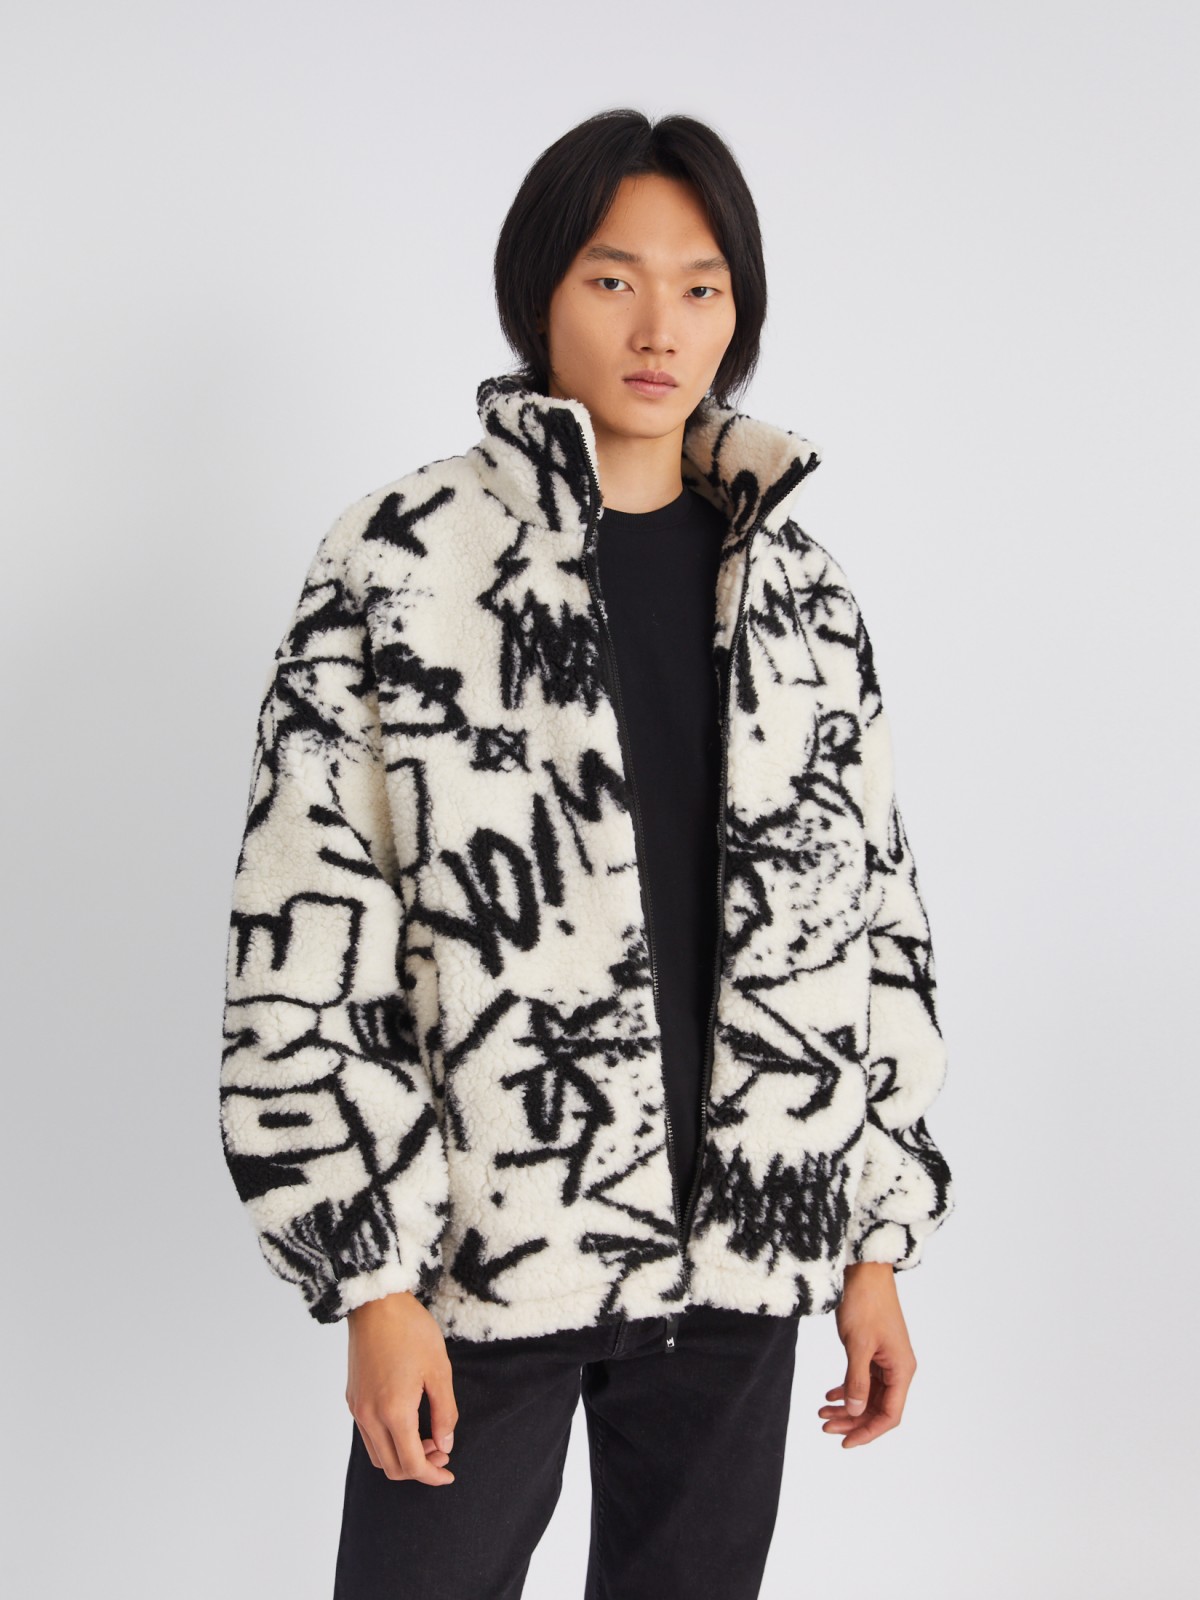 Тёплая куртка-шуба из экомеха на молнии с воротником-стойкой zolla 013345502034, цвет молоко, размер S/M